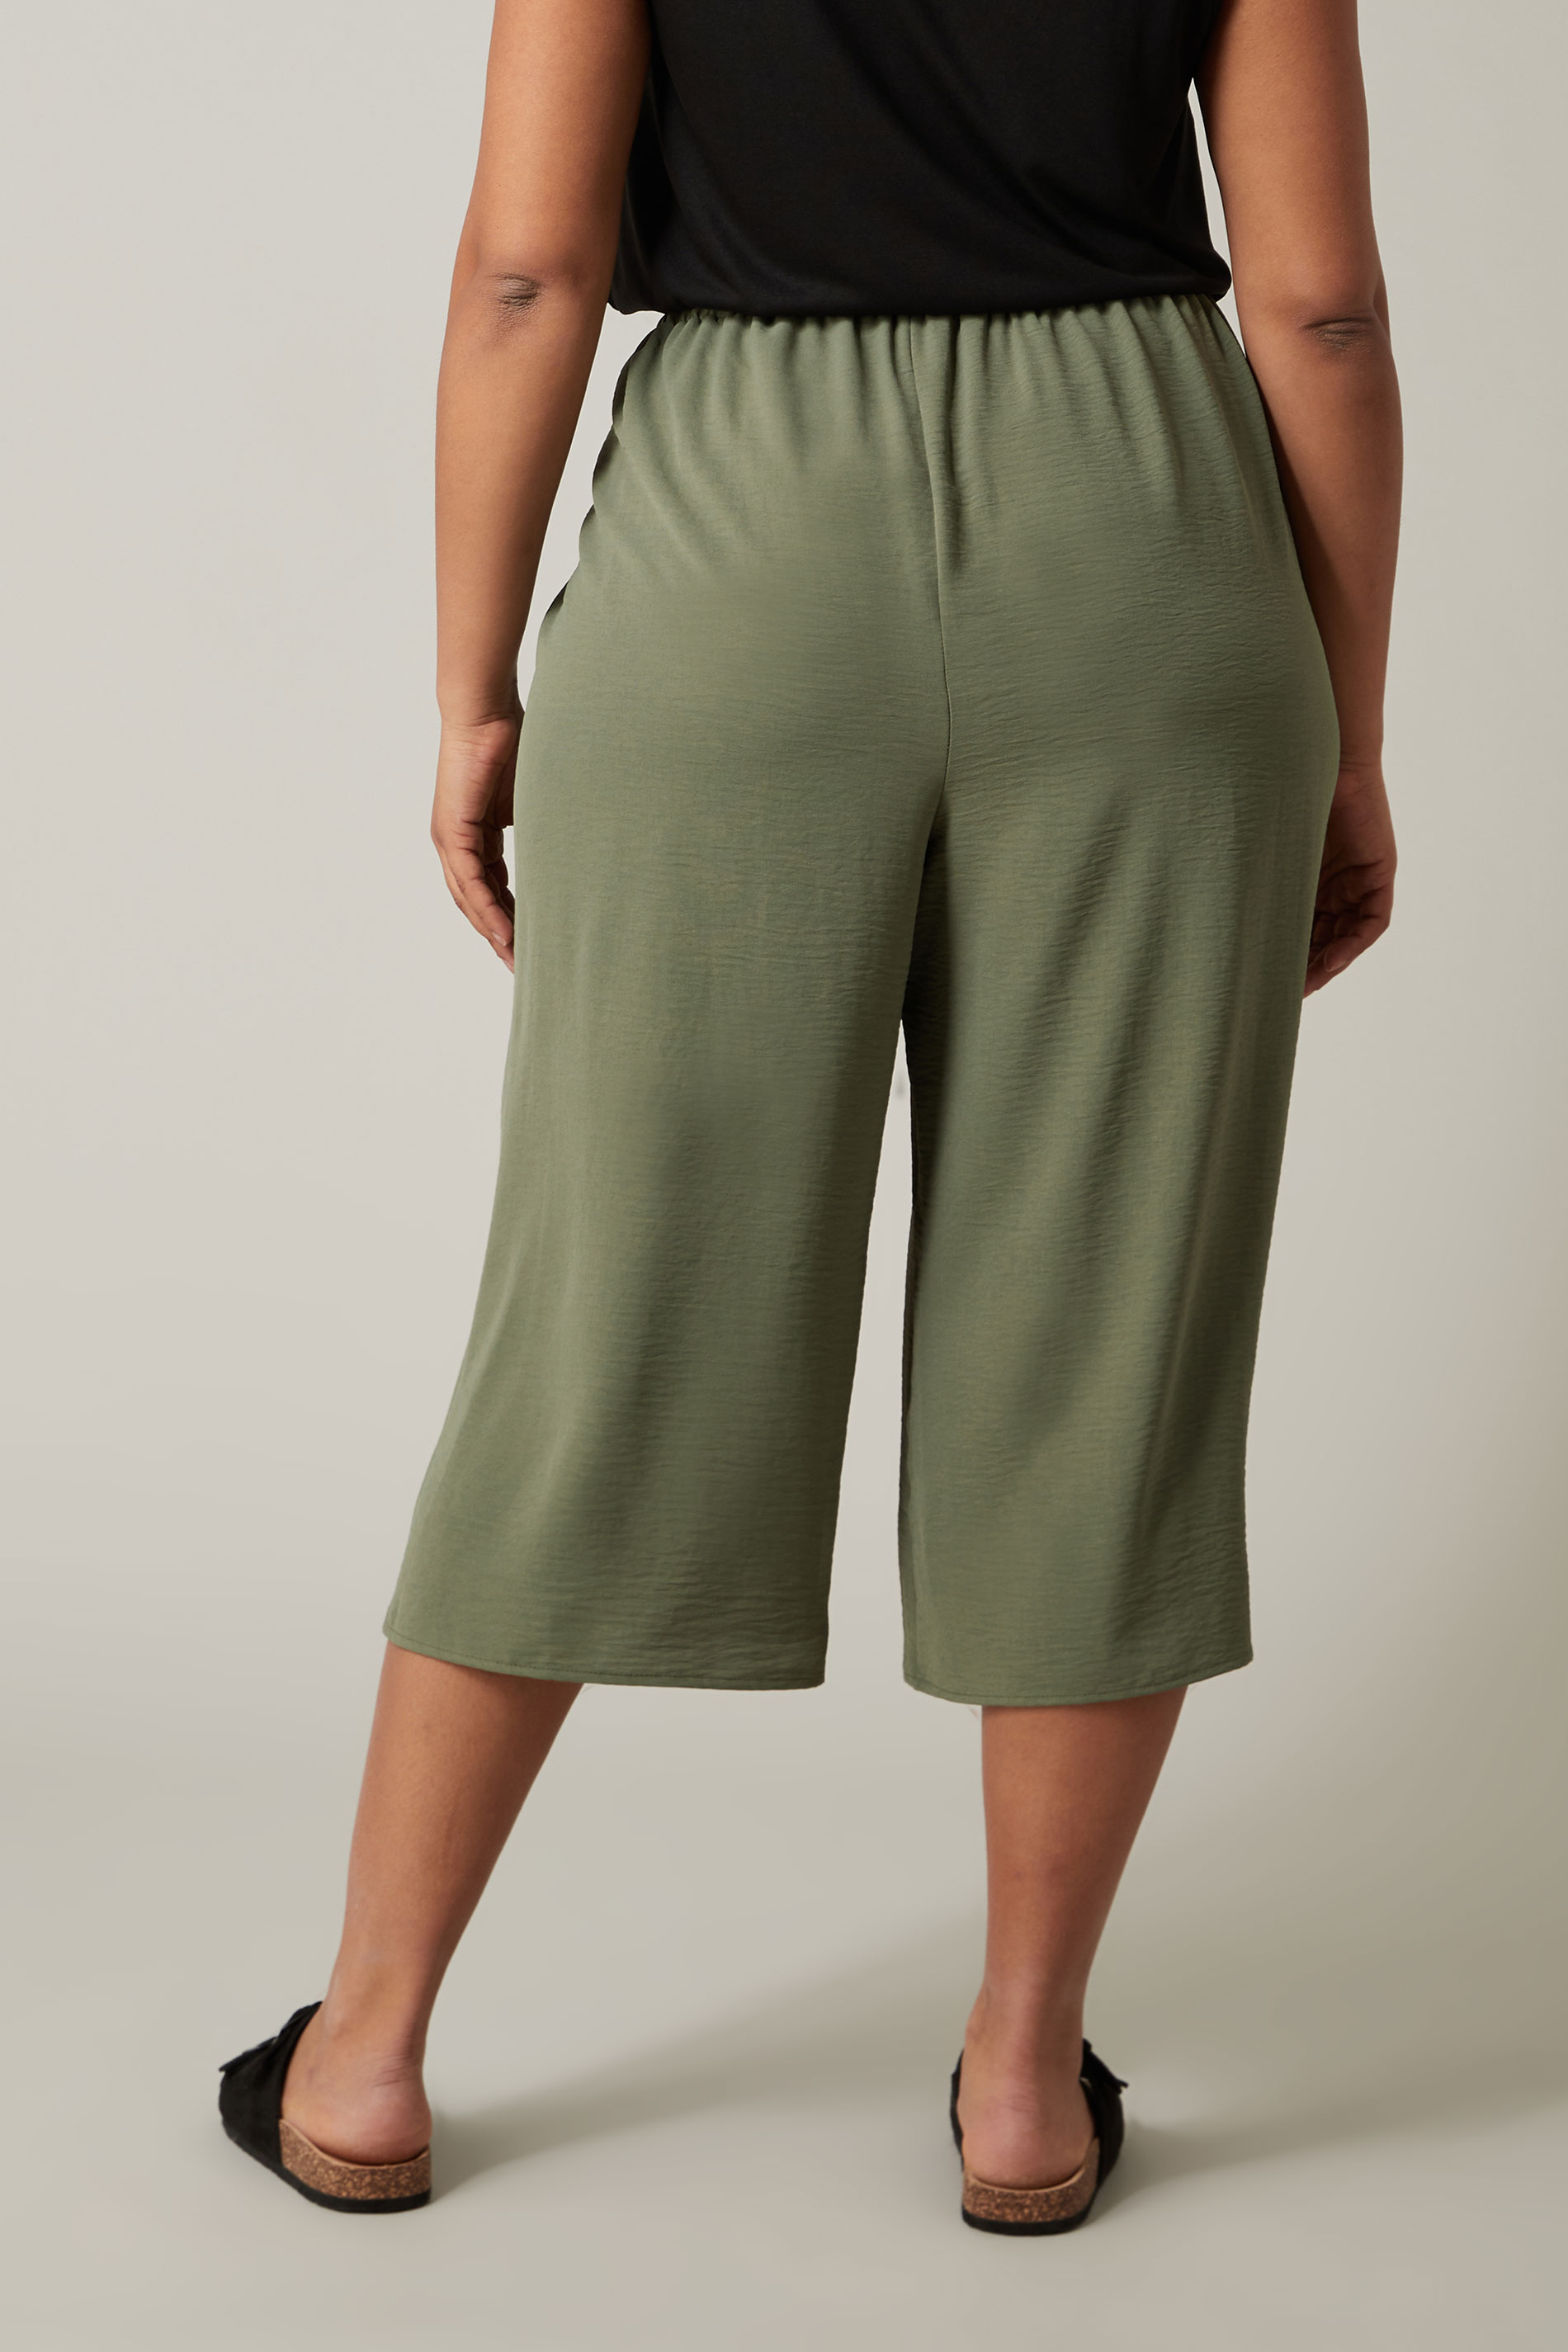 EVANS Plus Size Khaki Green Culottes | Evans  3